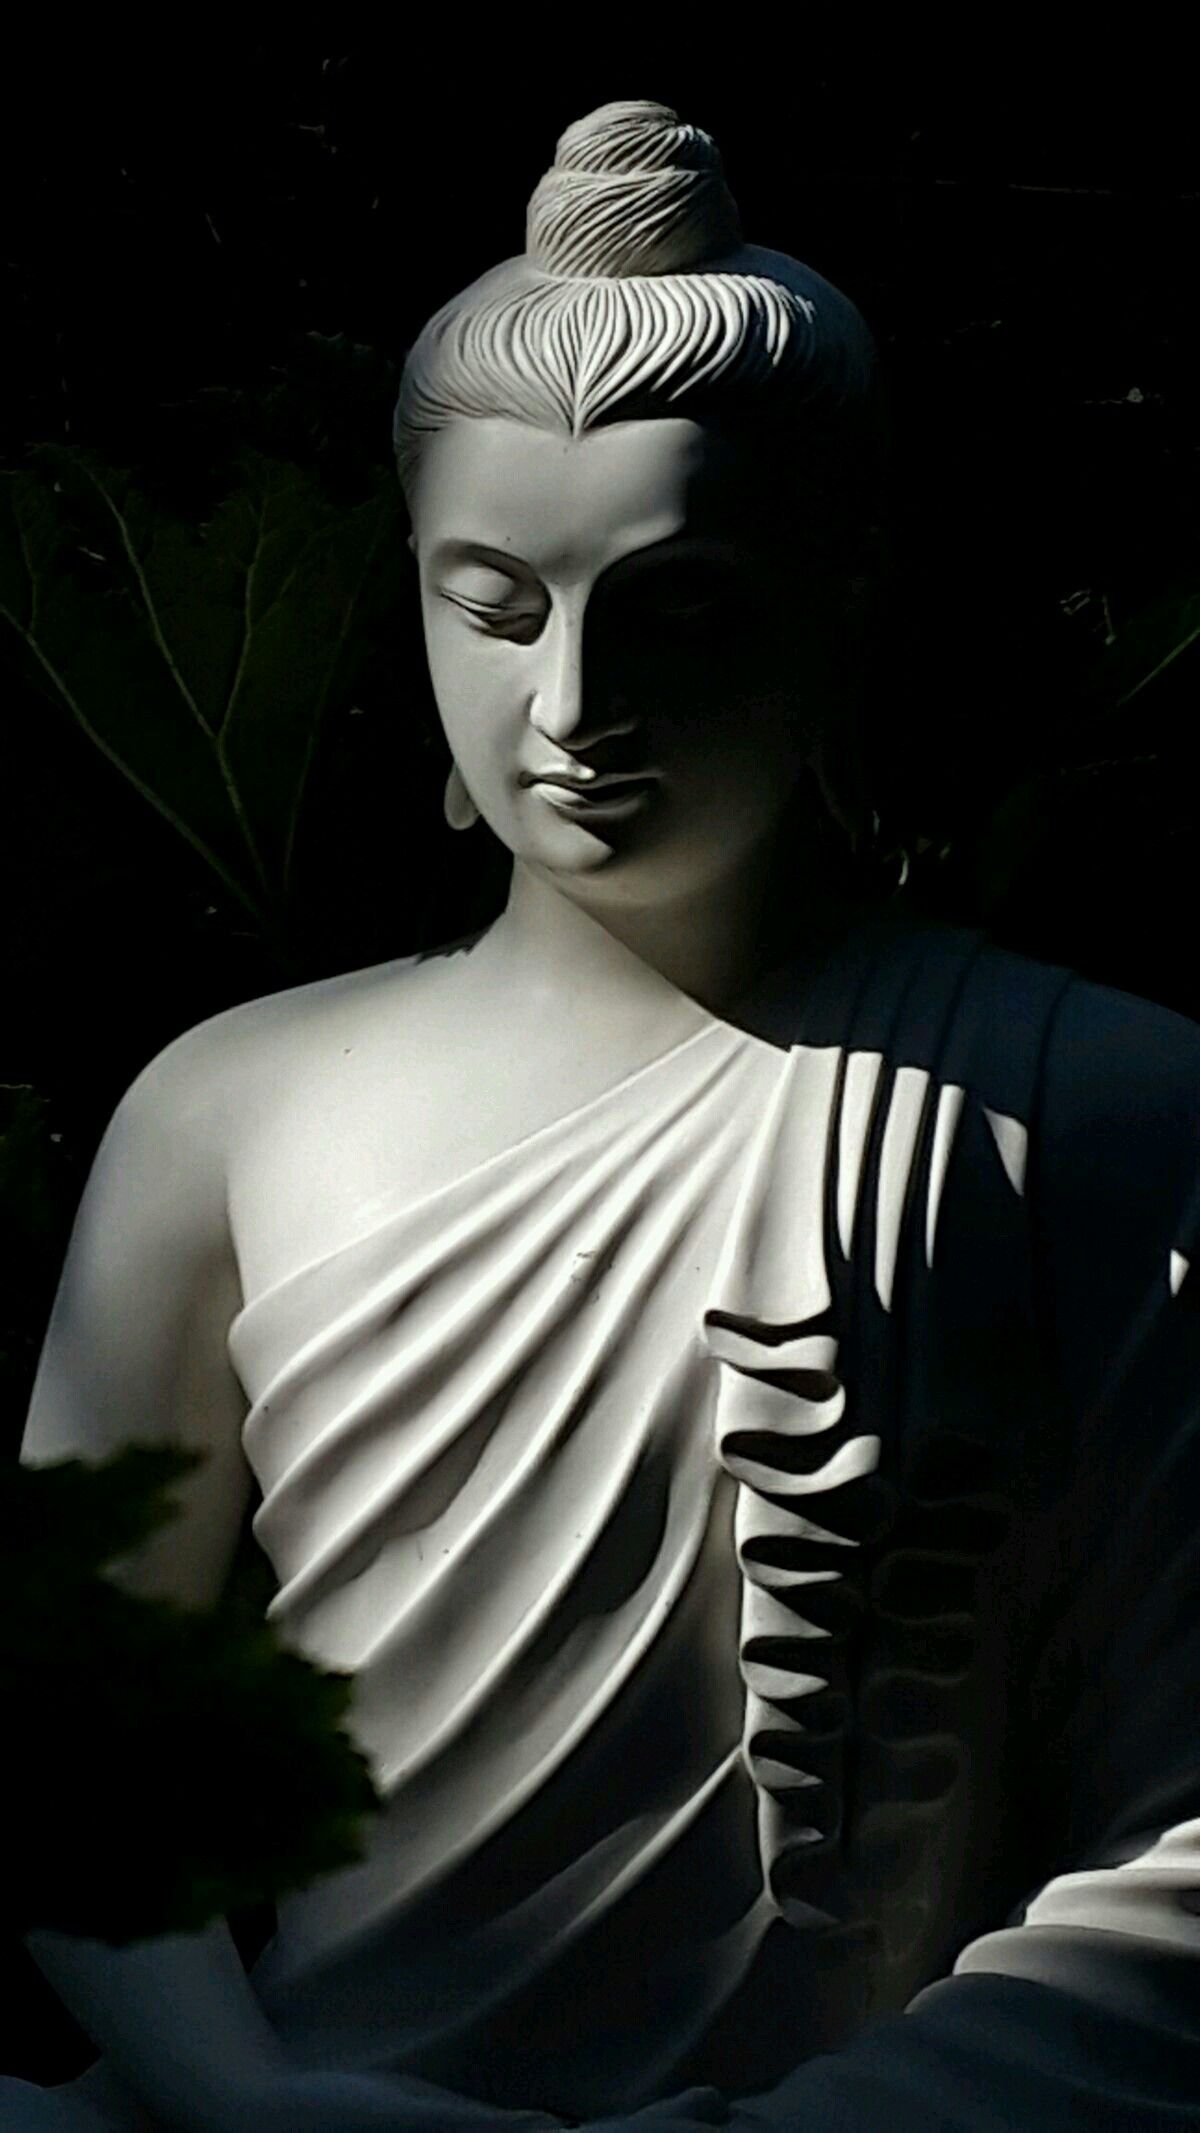 Nếu bạn đang tìm kiếm sự bình yên và niềm tin trong cuộc sống, hãy xem hình ảnh về Phật A Di Đà. Đây là một trong những bức ảnh đẹp nhất và mang ý nghĩa sâu sắc về sự trường tồn và tình yêu thương.